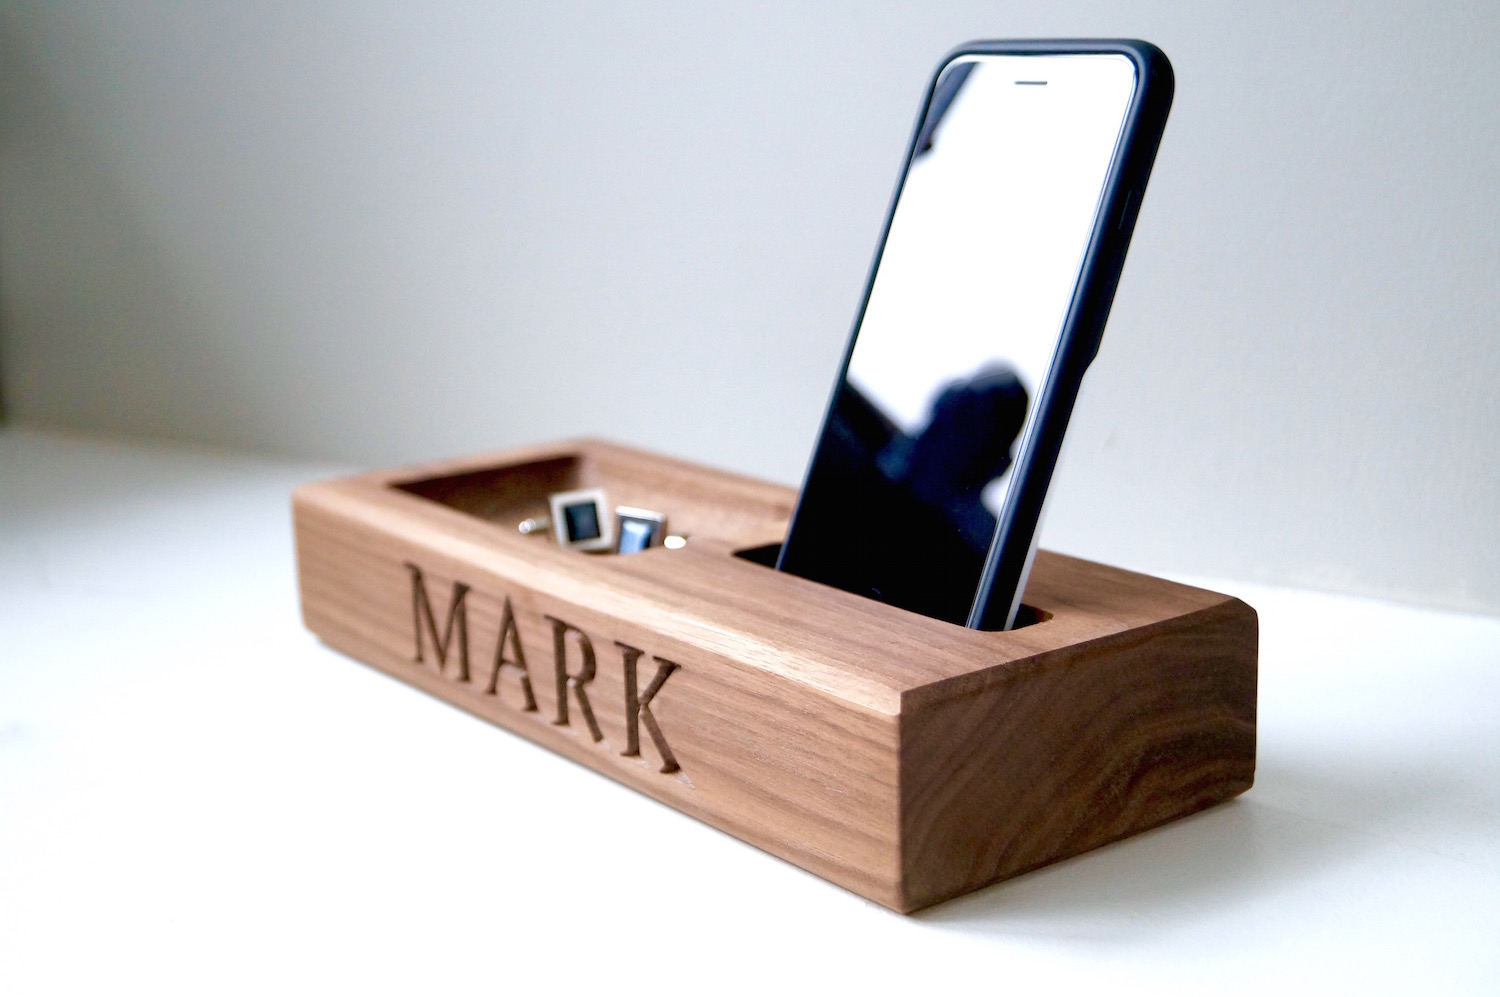 personalised-wood-gifts-makemesomethingspeical.com